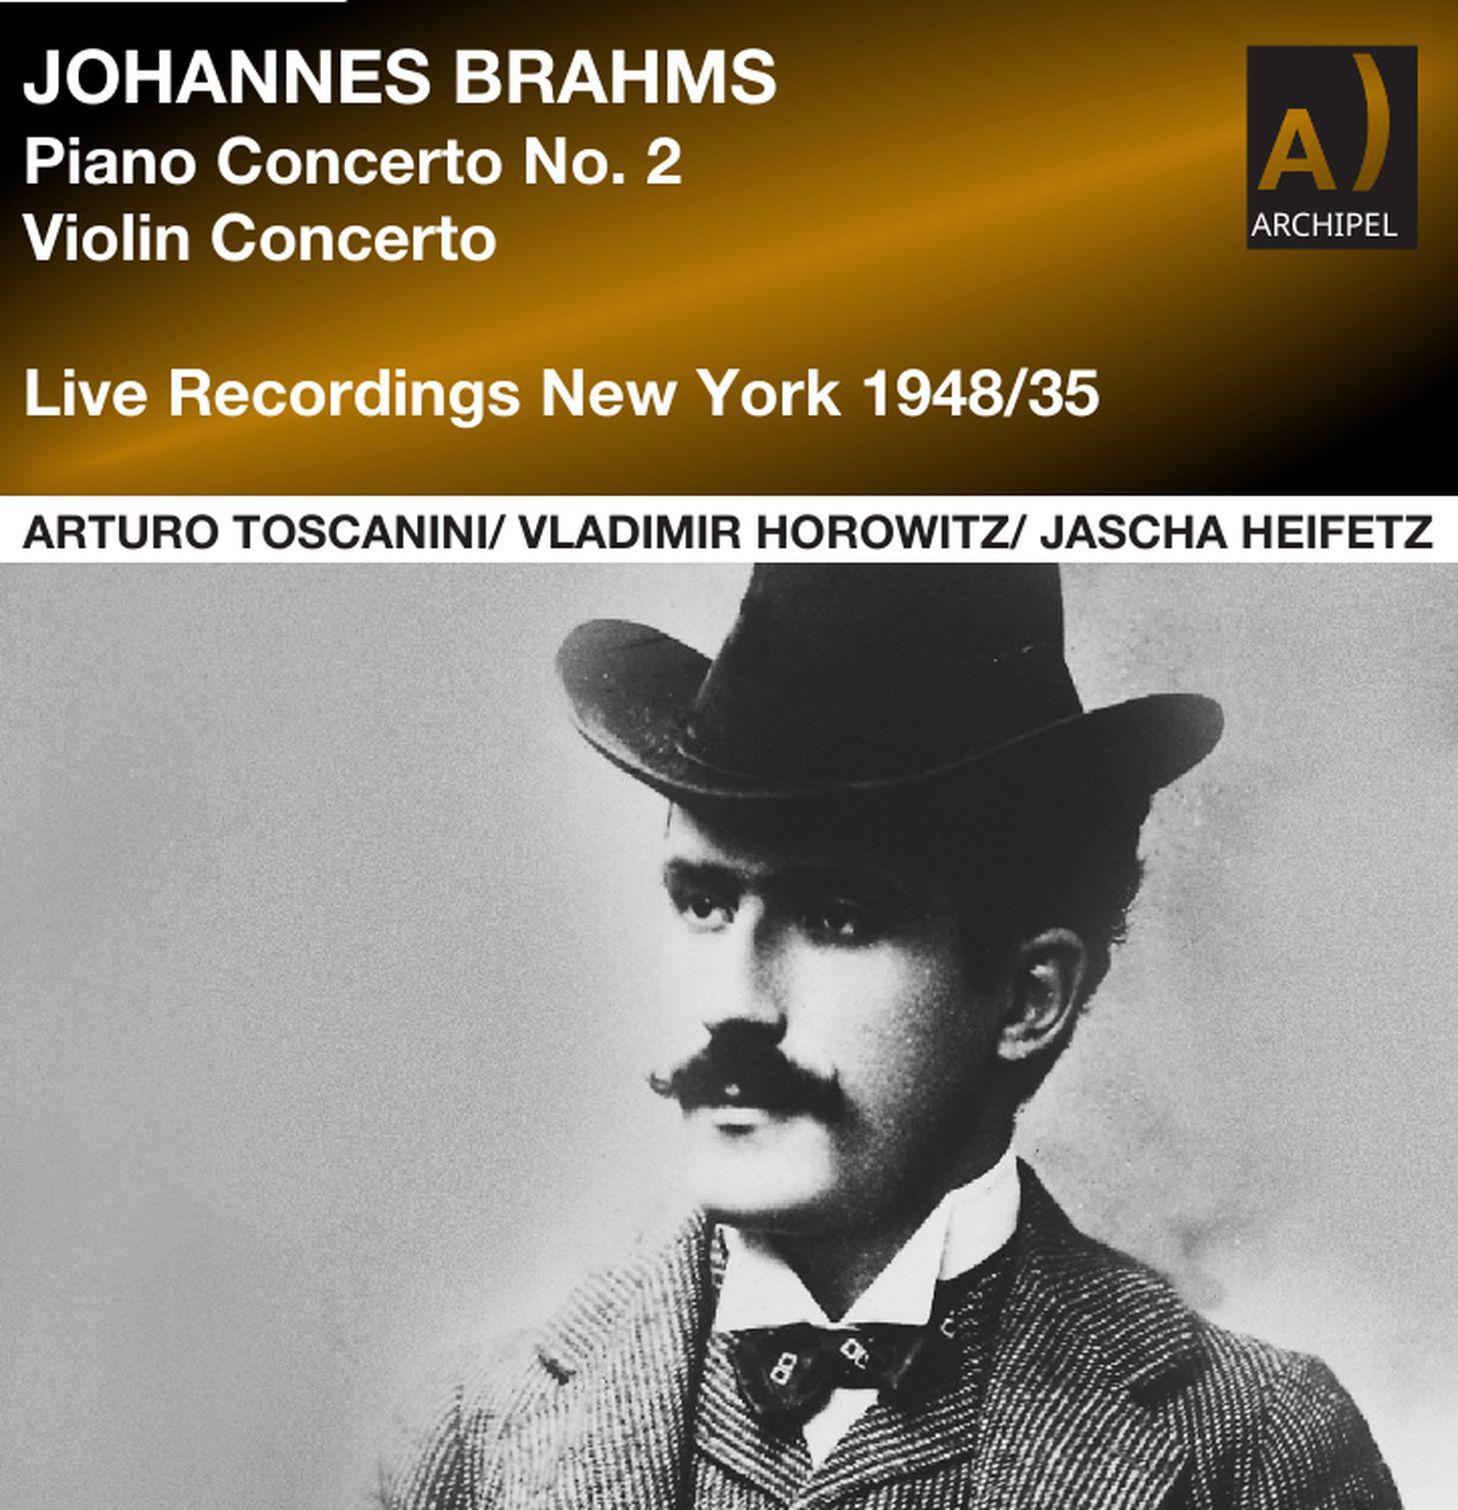 Arturo Toscanini - 04 Allegretto grazioso